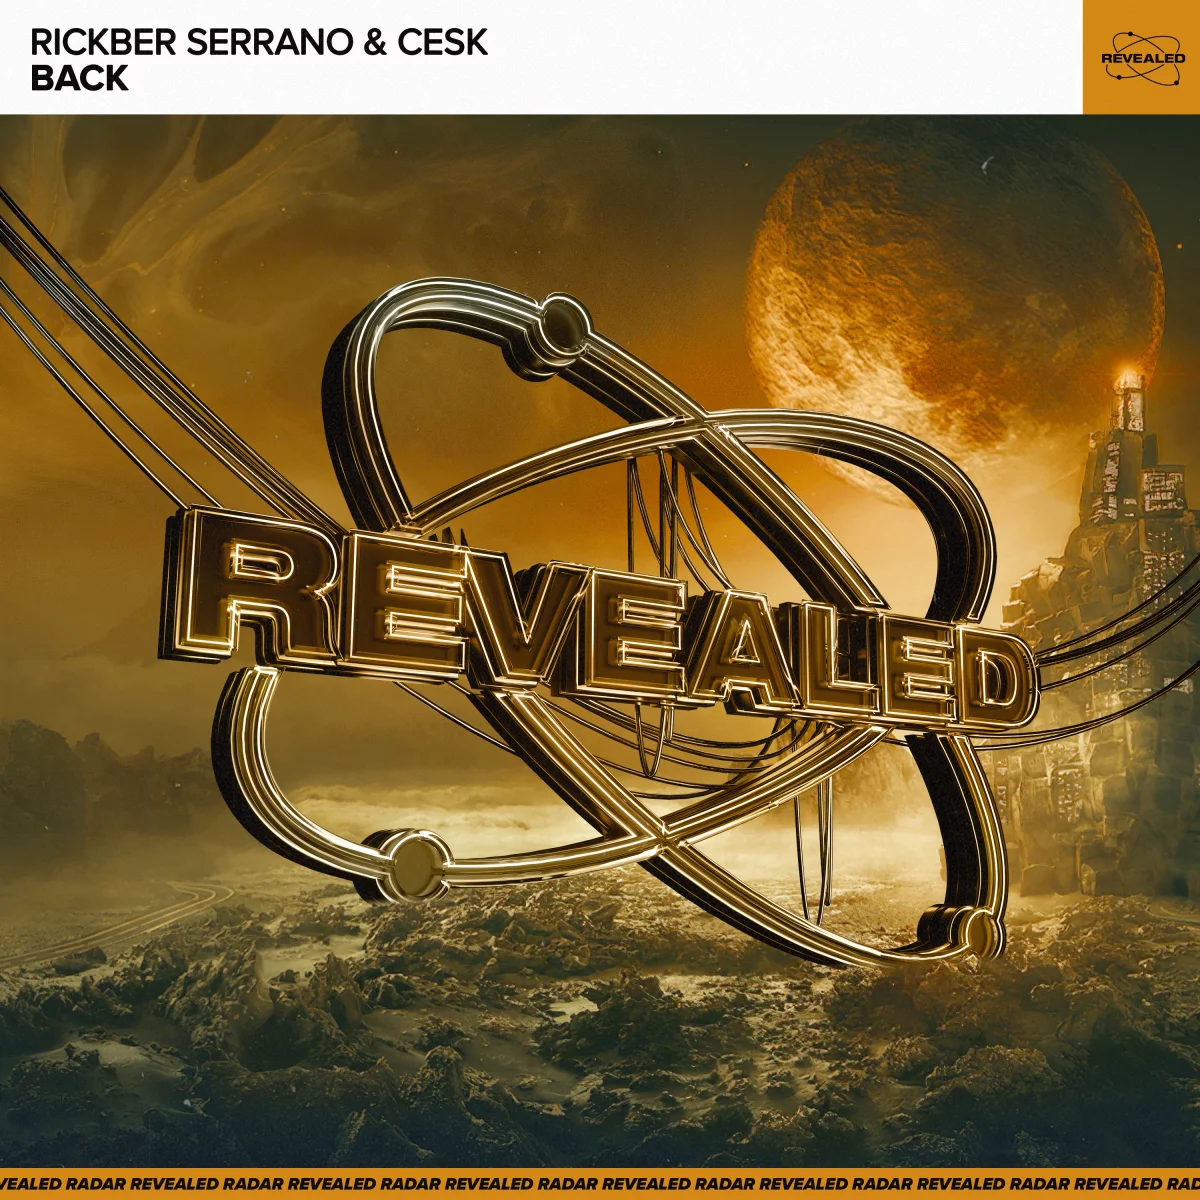 Back - Rickber Serrano⁠ & Cesk⁠